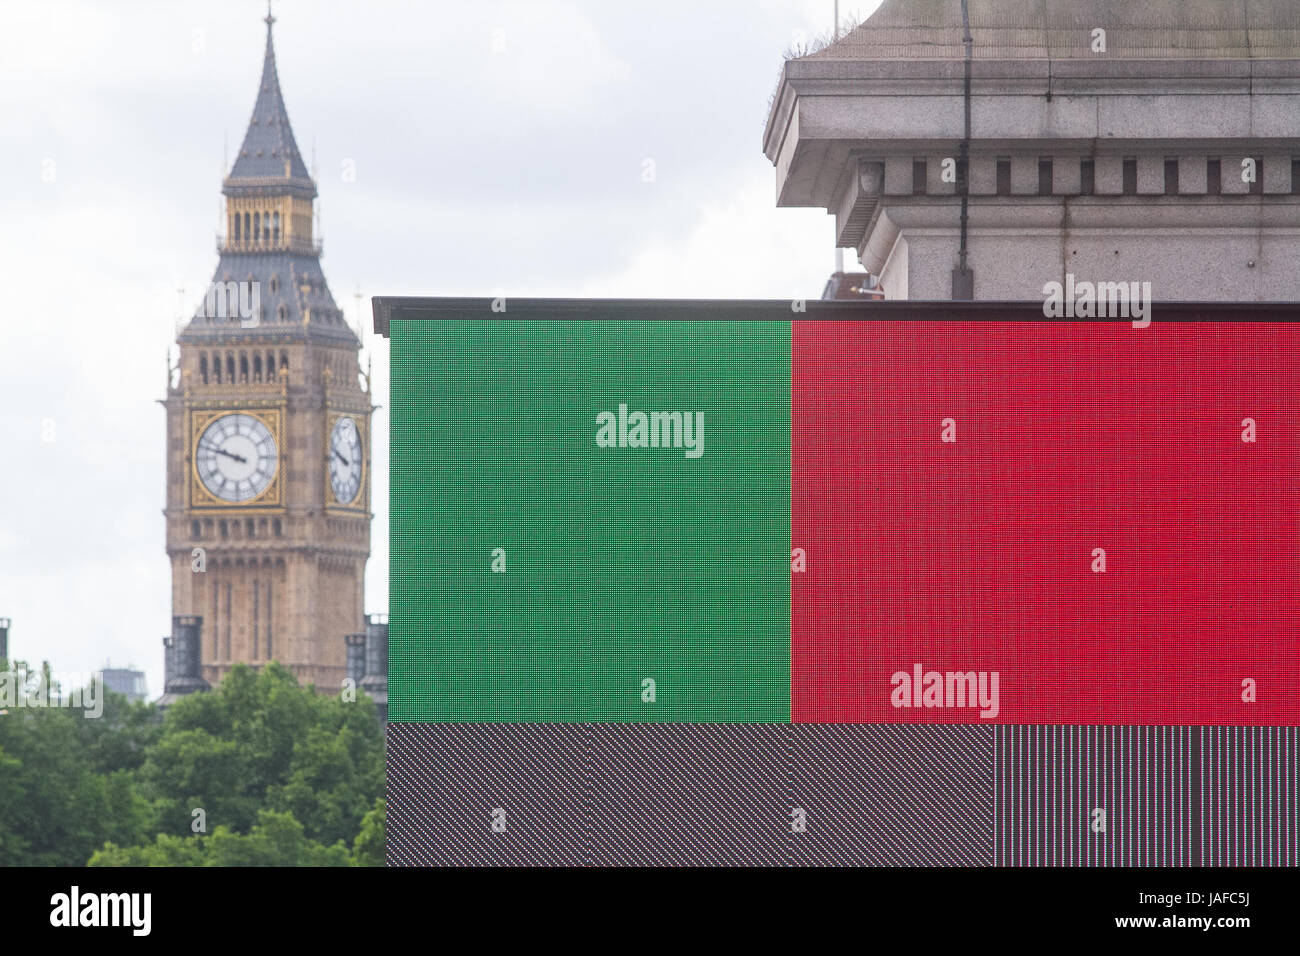 Londres, Royaume-Uni. 7 juin, 2017. Une carte électronique affiche les couleurs représentant les principaux partis politiques le dernier jour de la campagne électorale britannique avant le rendez-vous aux urnes le 8 juin pour décider du prochain gouvernement Crédit : amer ghazzal/Alamy Live News Banque D'Images